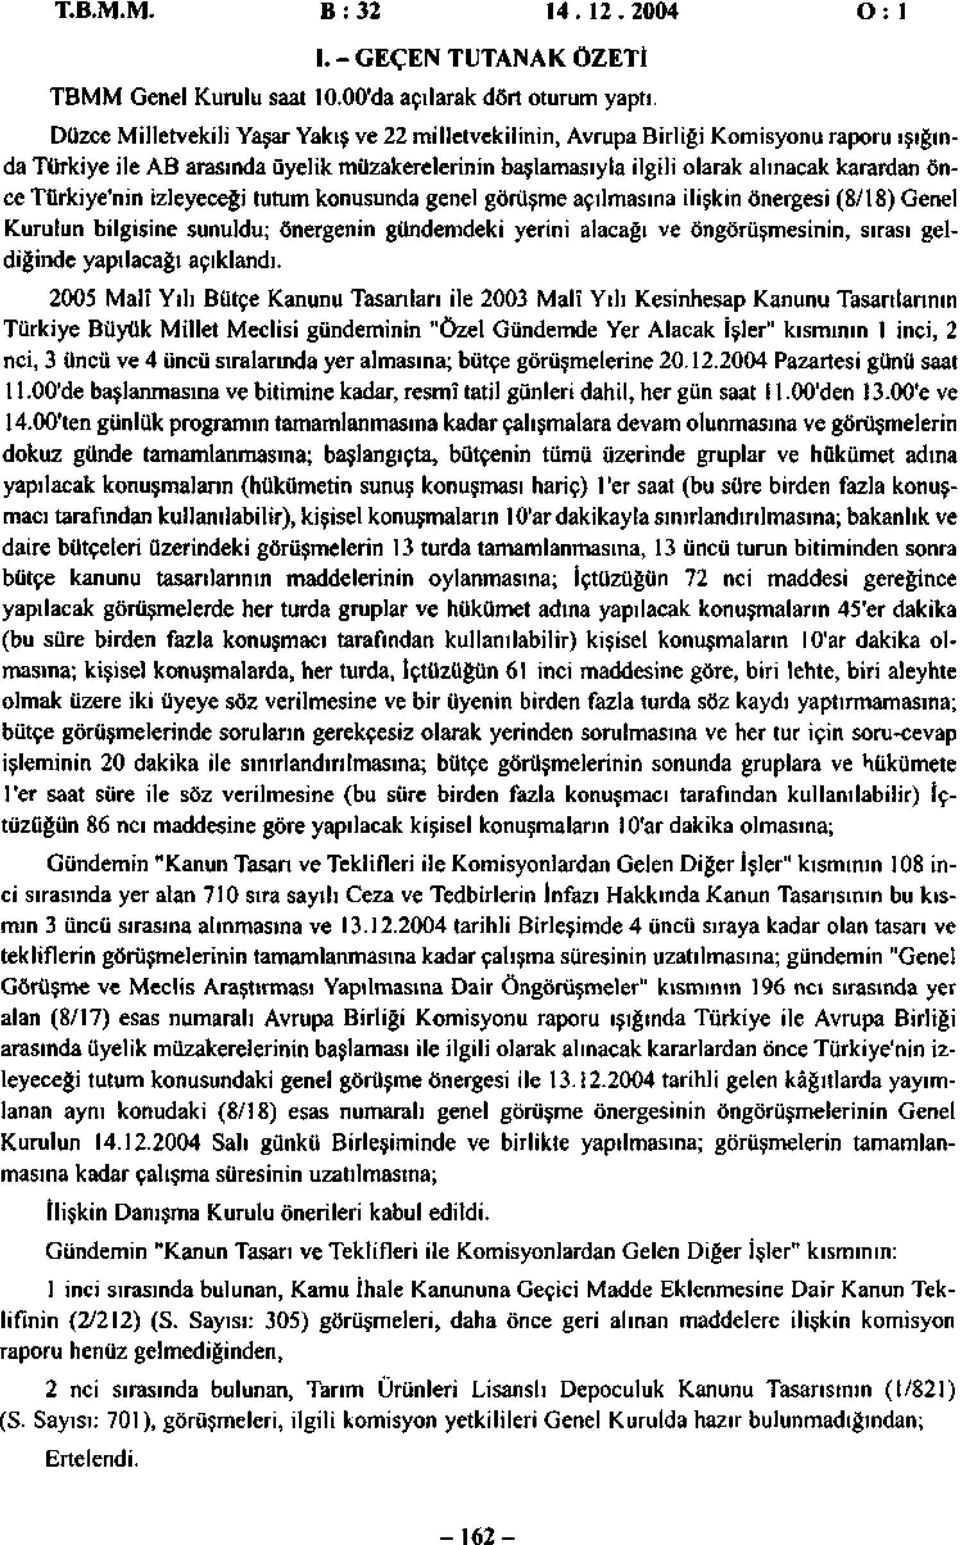 Türkiye'nin izleyeceği tutum konusunda genel görüşme açılmasına ilişkin önergesi (8/18) Genel Kurulun bilgisine sunuldu; önergenin gündemdeki yerini alacağı ve öngörüşmesinin, sırası geldiğinde